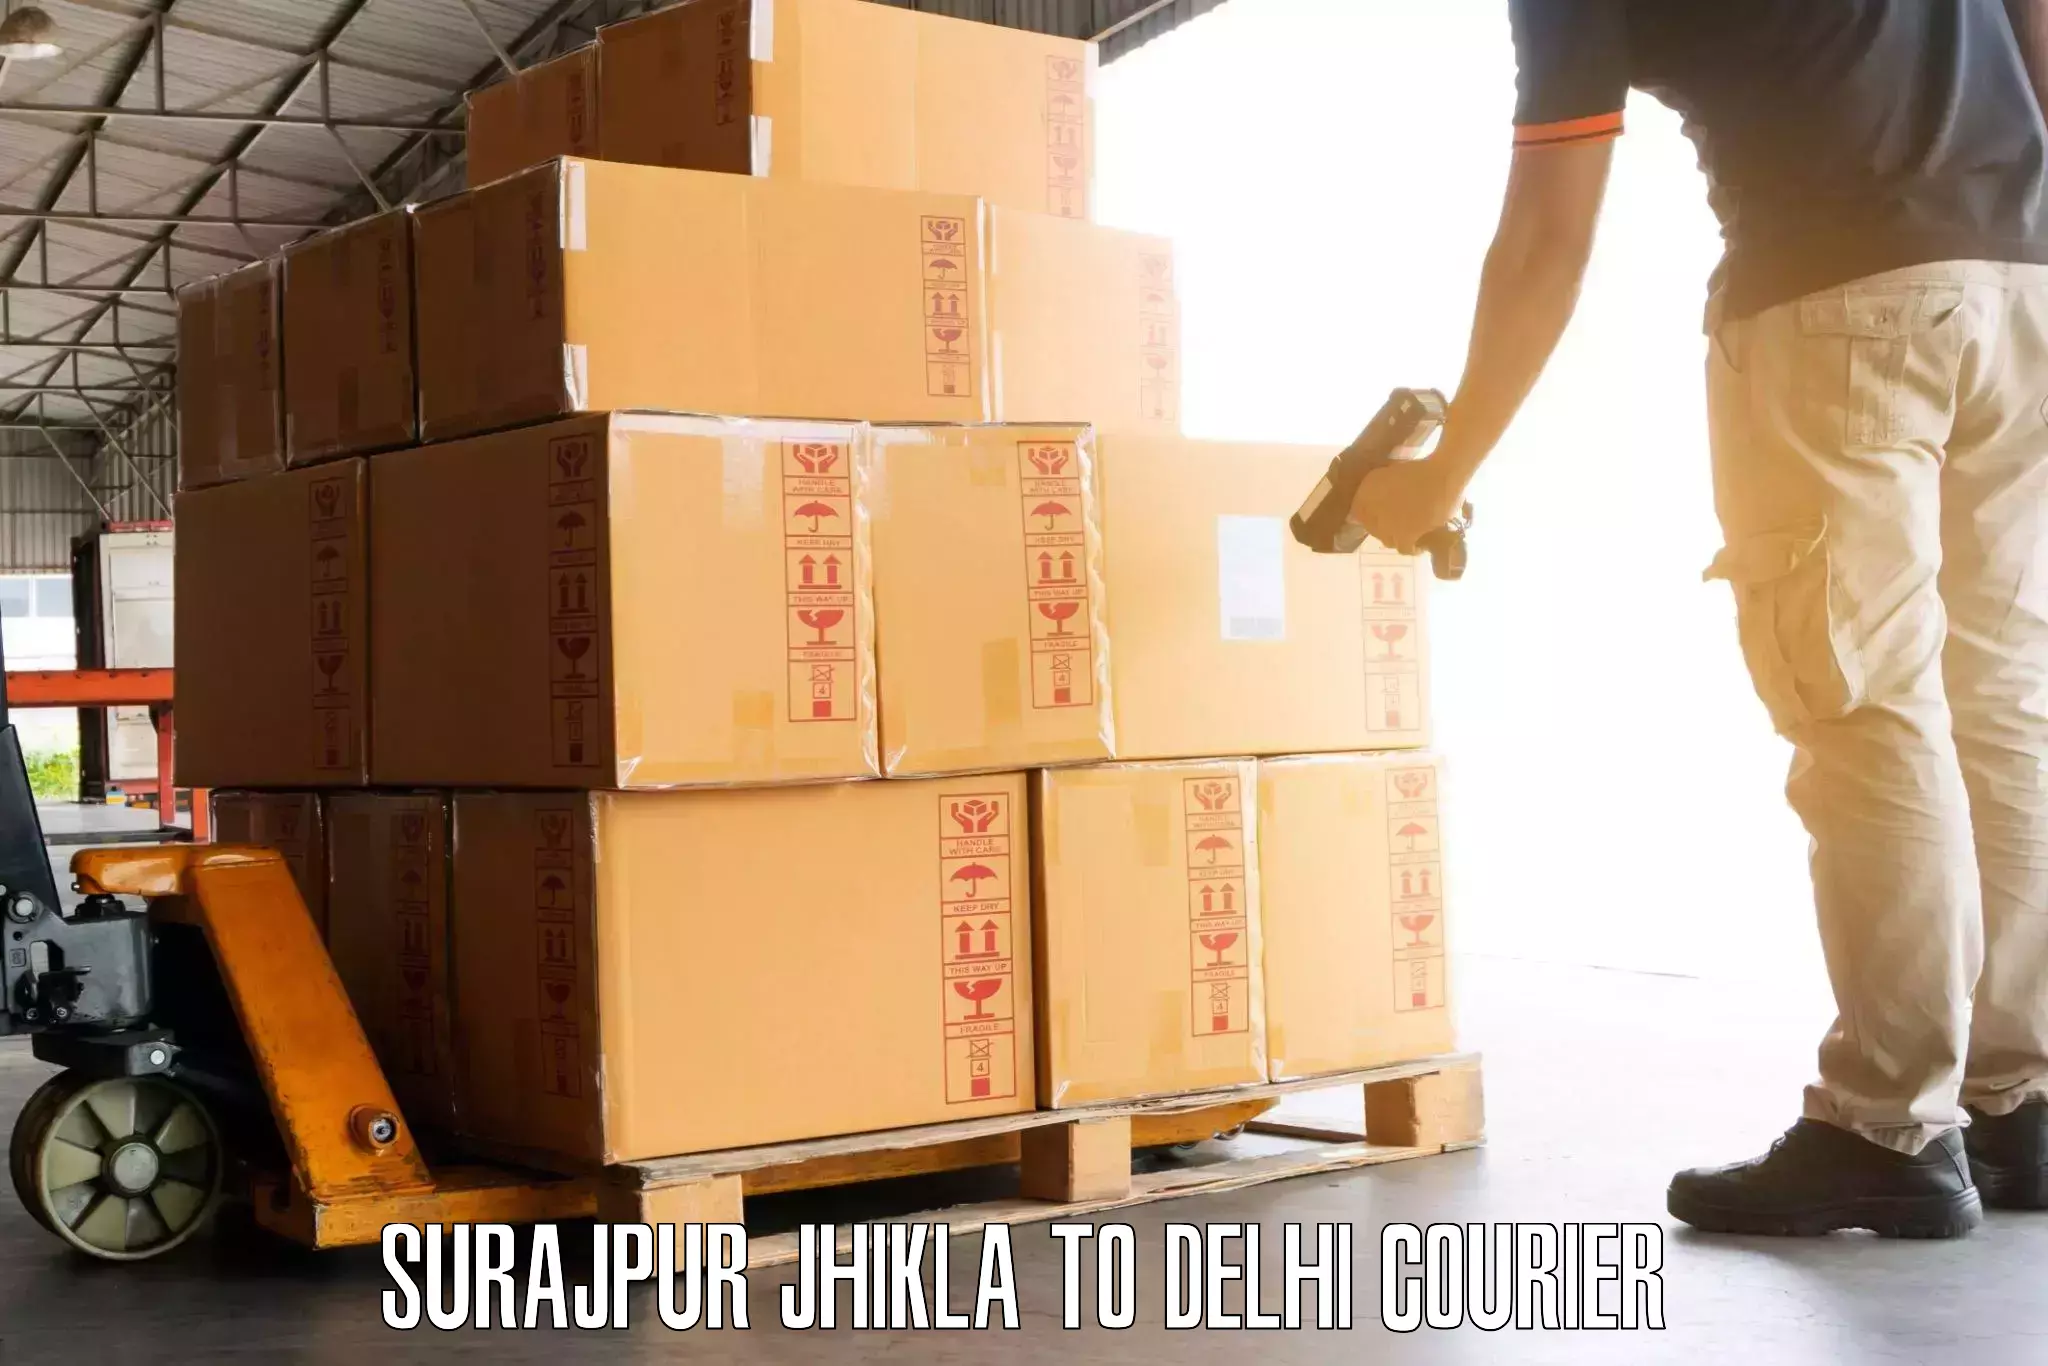 Luggage delivery system in Surajpur Jhikla to Kalkaji